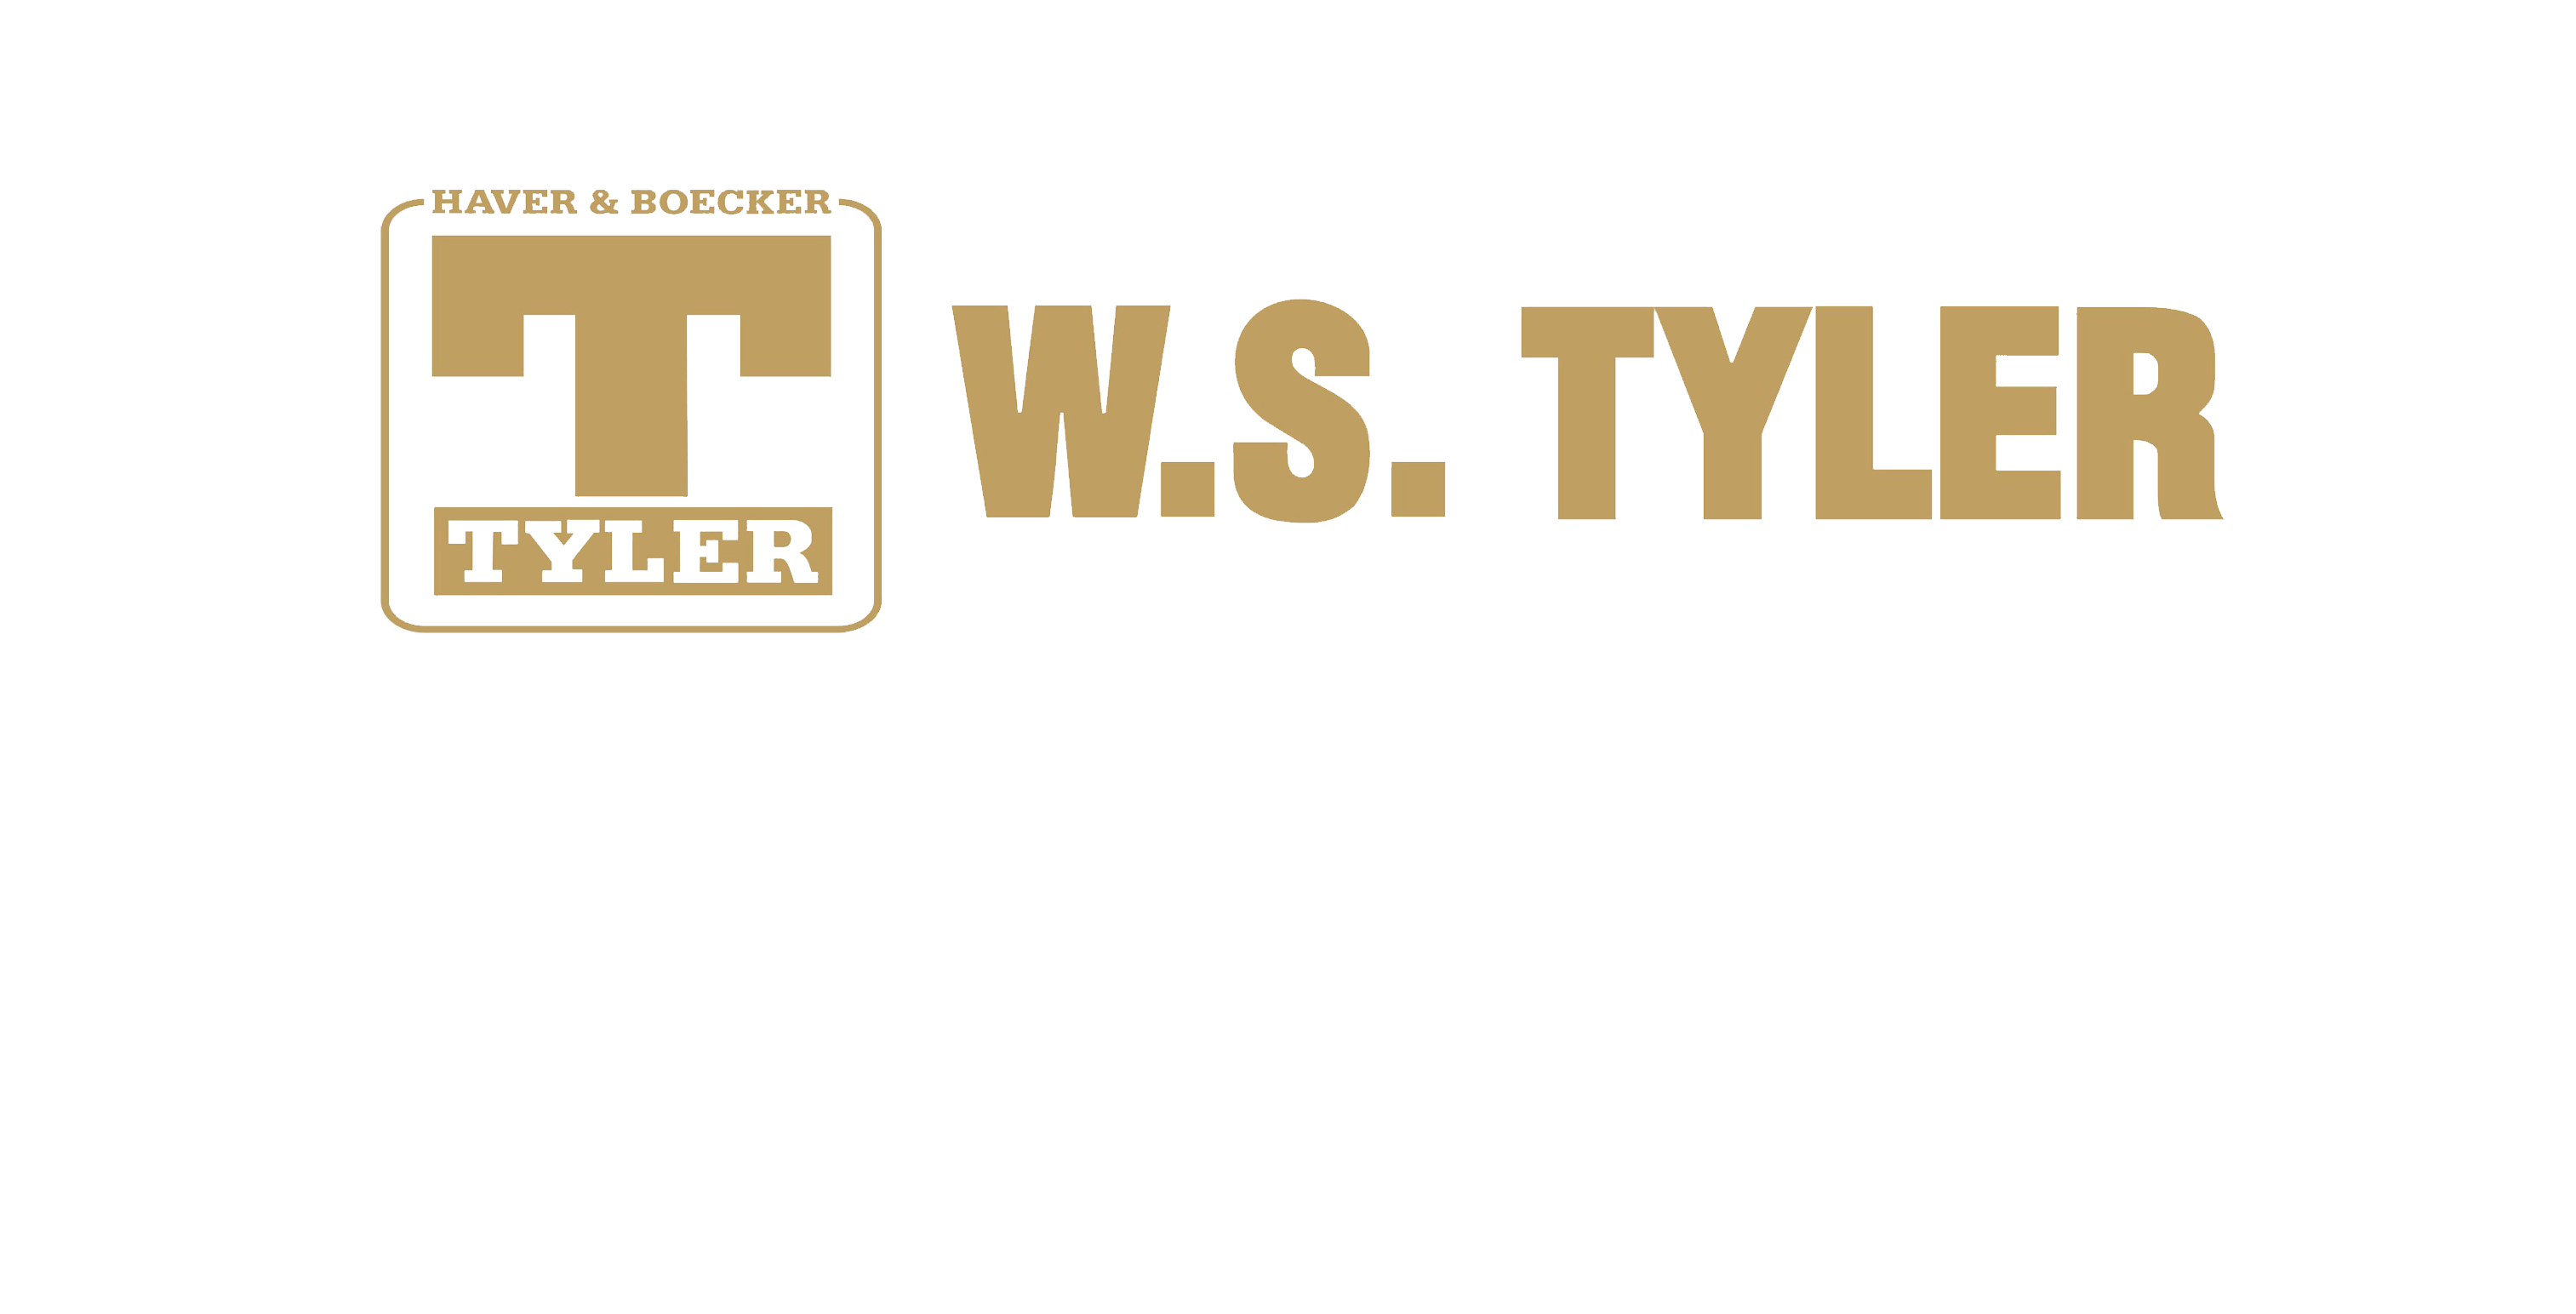 w.s.tyler